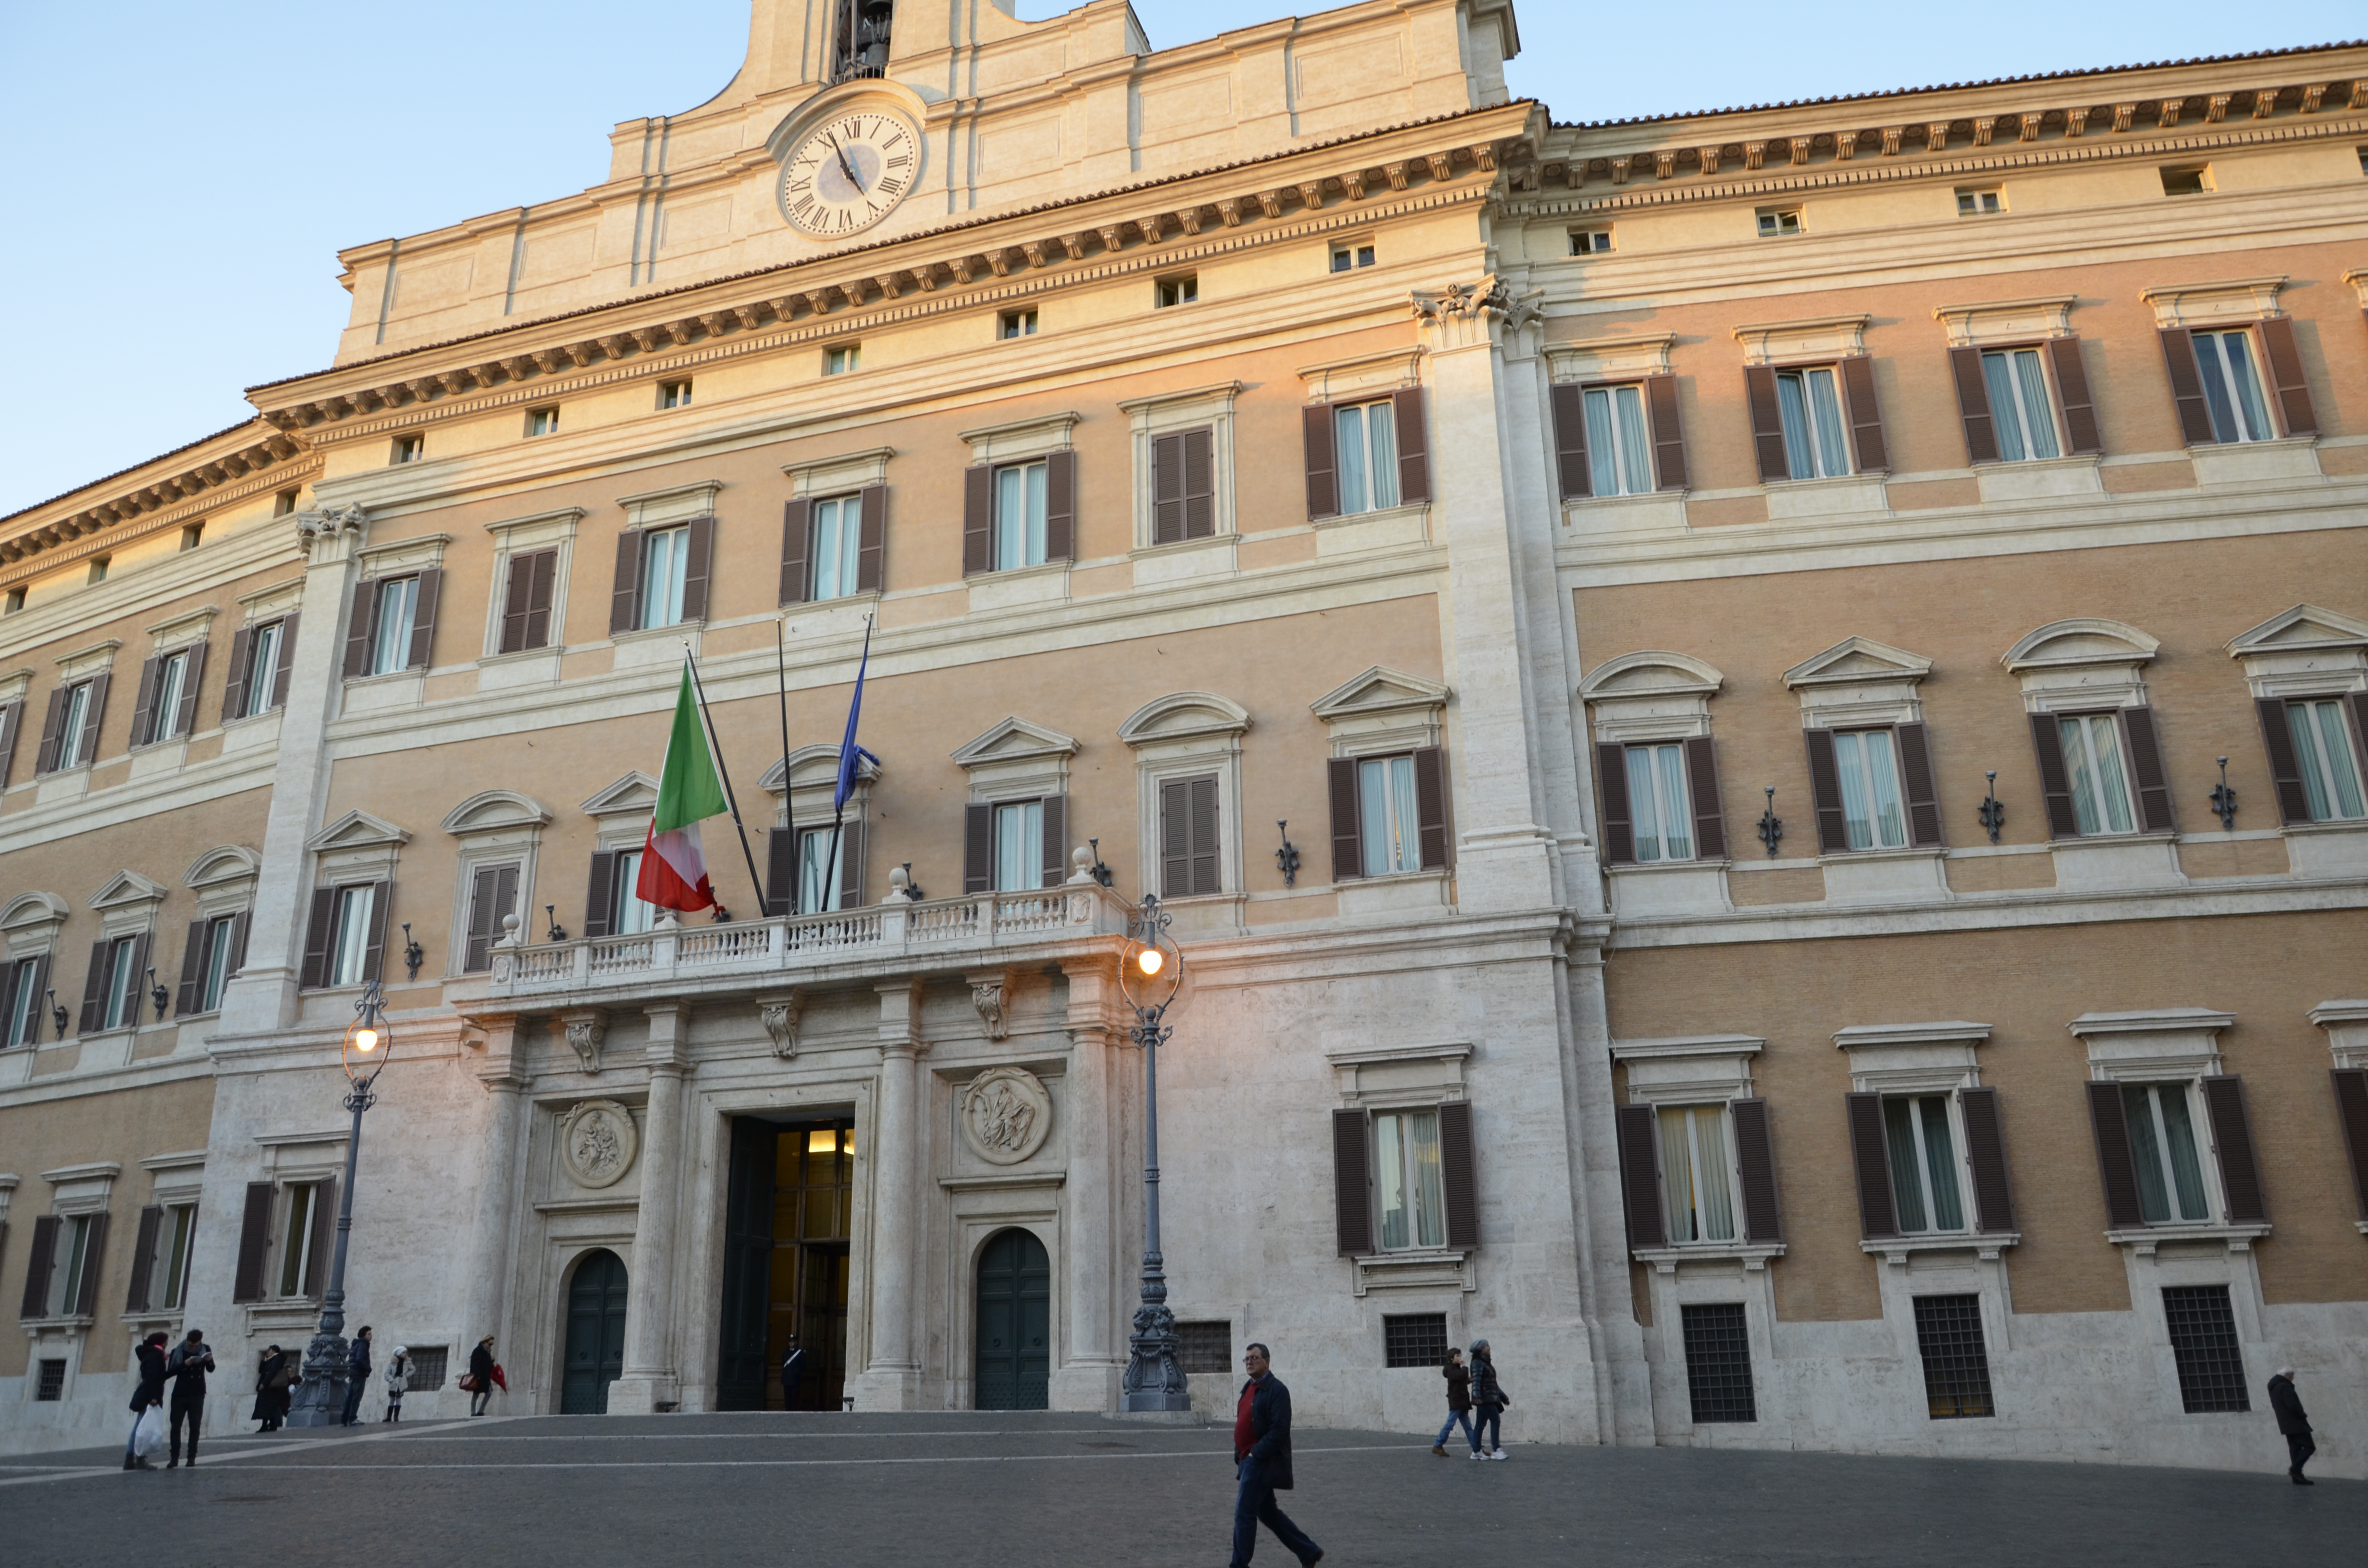 意大利众议院高票通过友台案 吁重视台海稳定